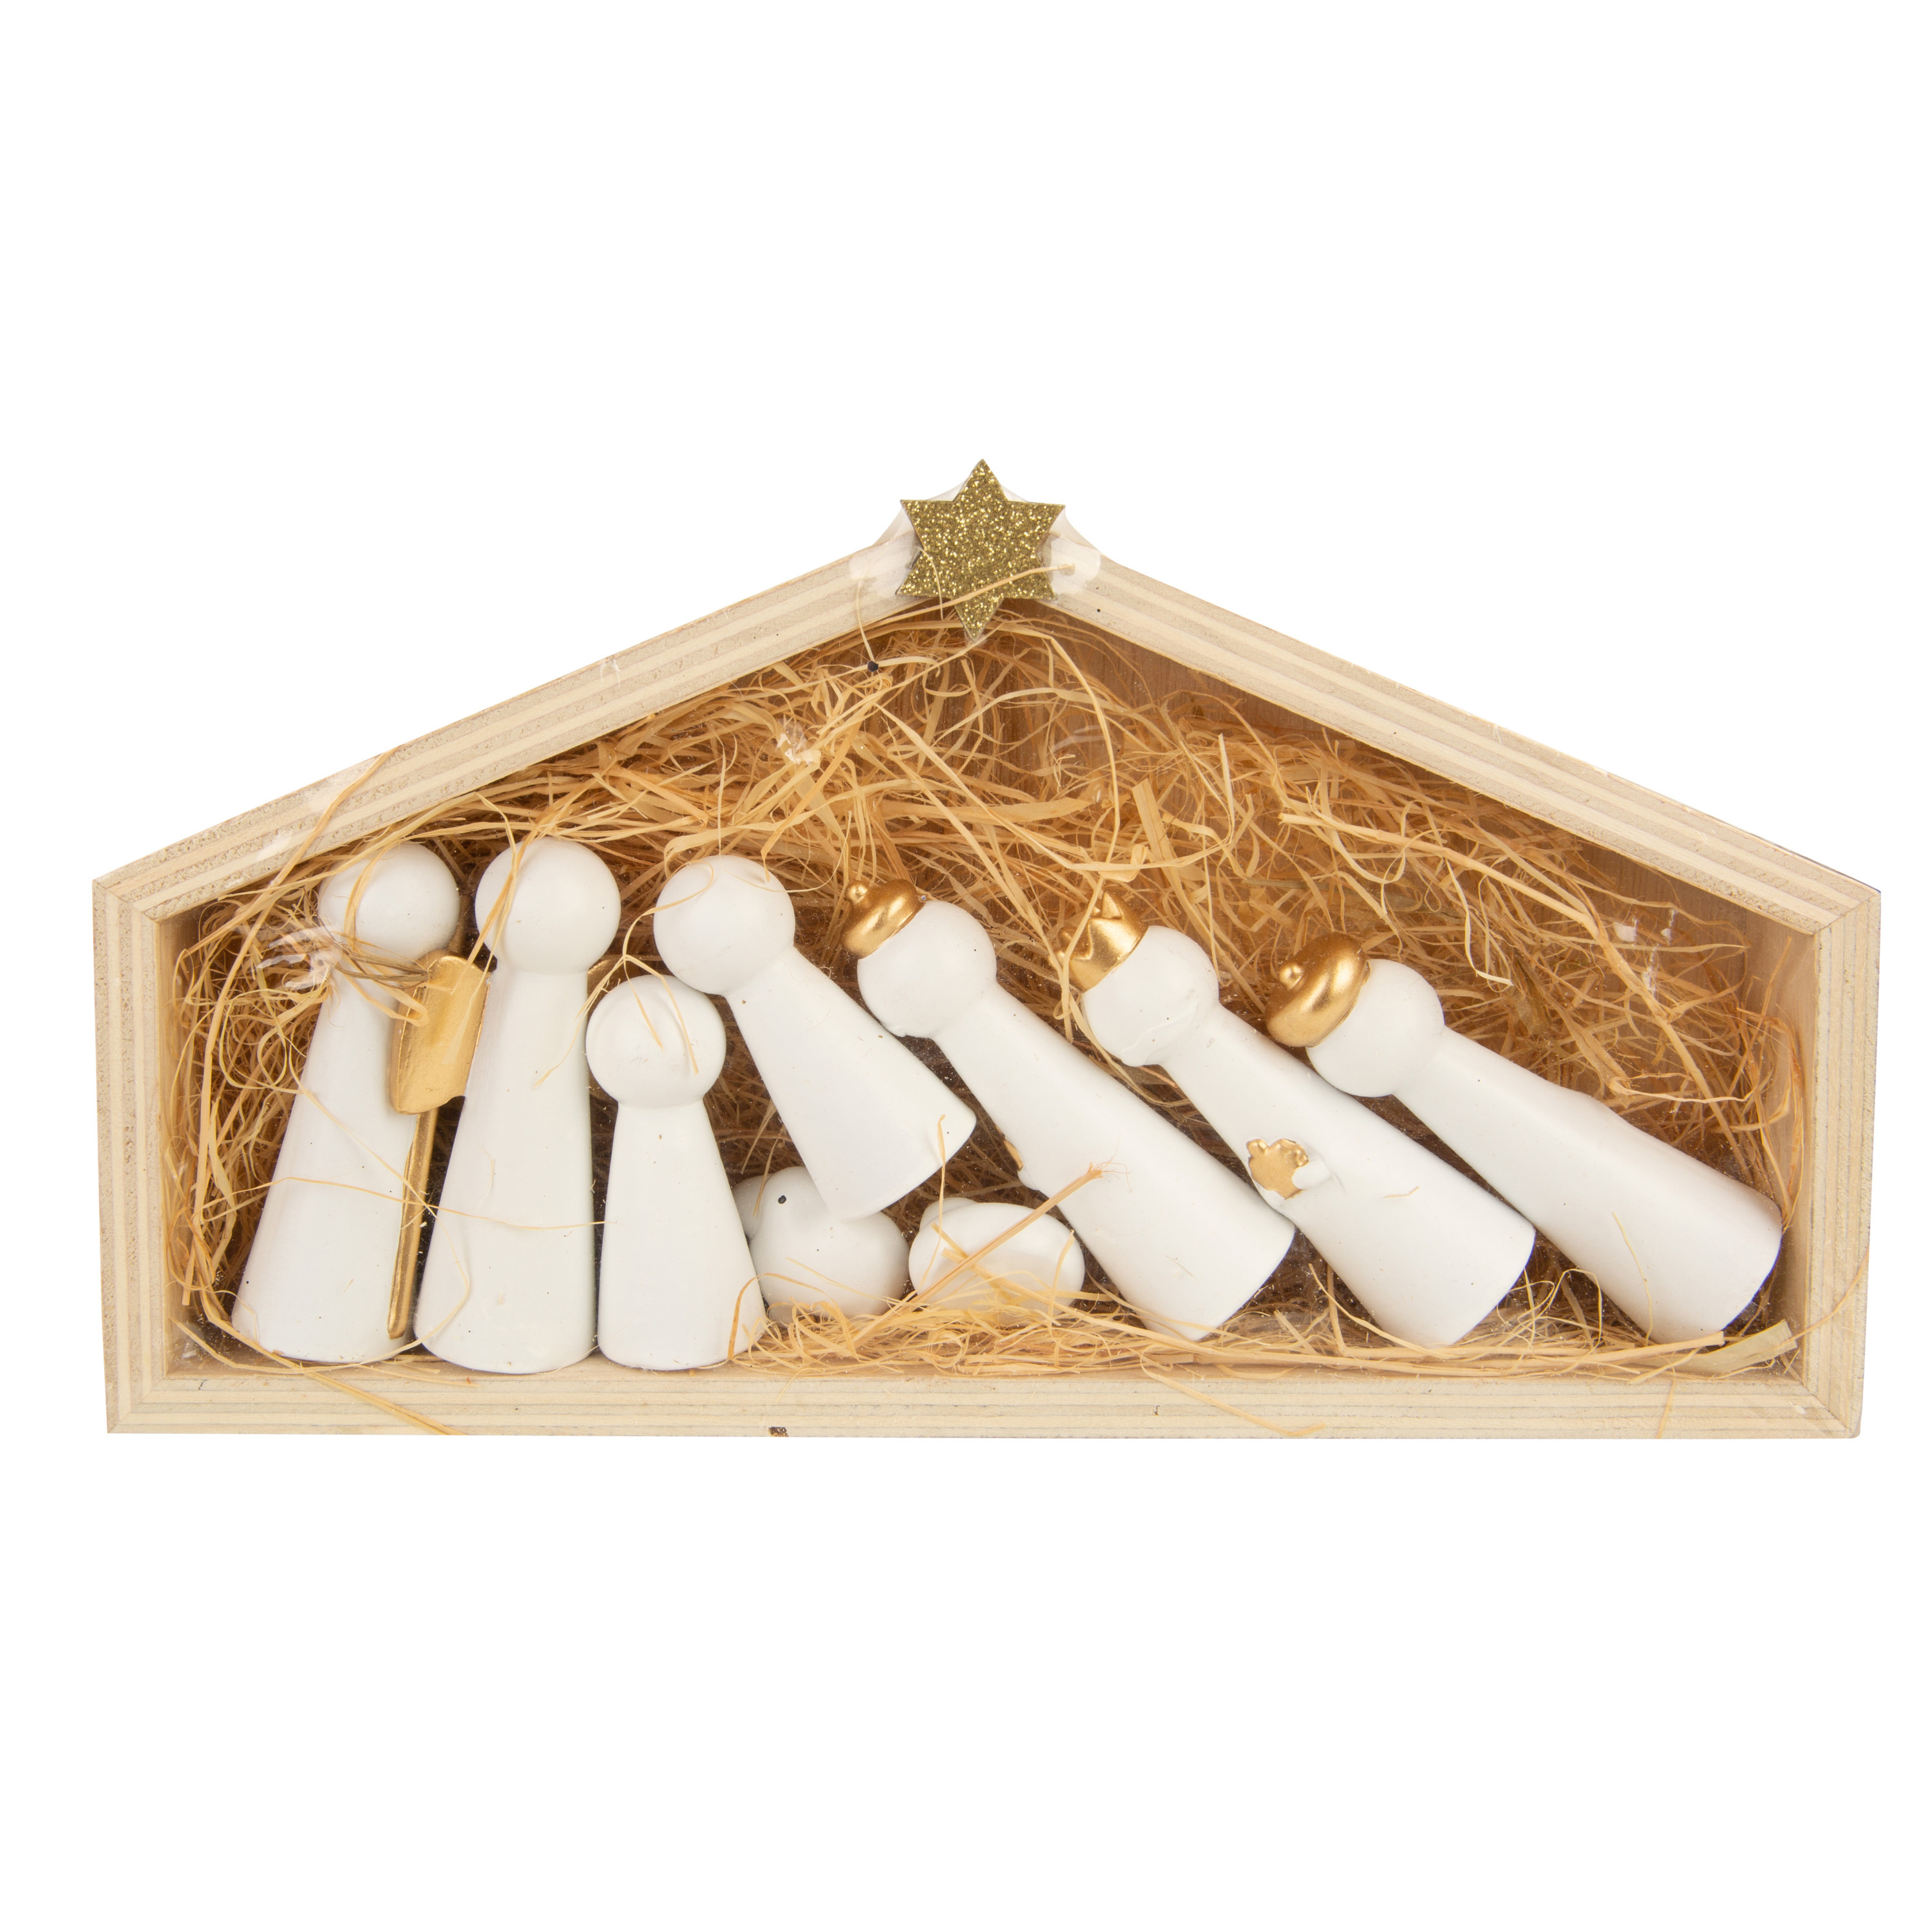 Houten kerststal-kerststalletje inclusief houten poppetjes 24 cm